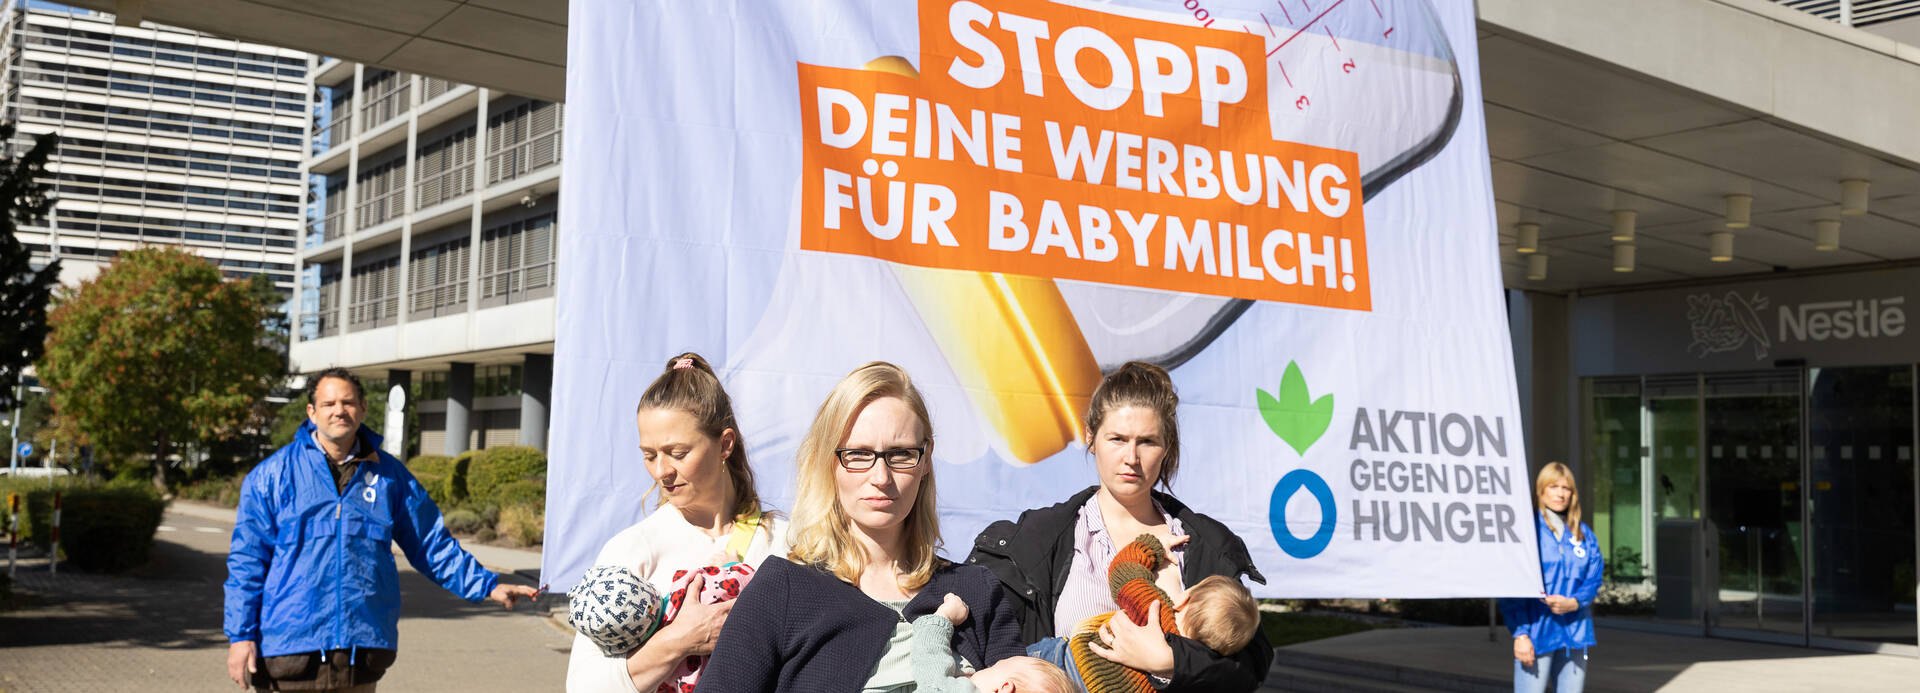 Mütter mit Babys stillen vor der Nestlé-Zentrale in Frankfurt am Main, im Hintergrund halten Aktivist*innen von Aktion gegen den Hunger ein Banner: Nestlé: Stopp deine Werbung für Babymilch!